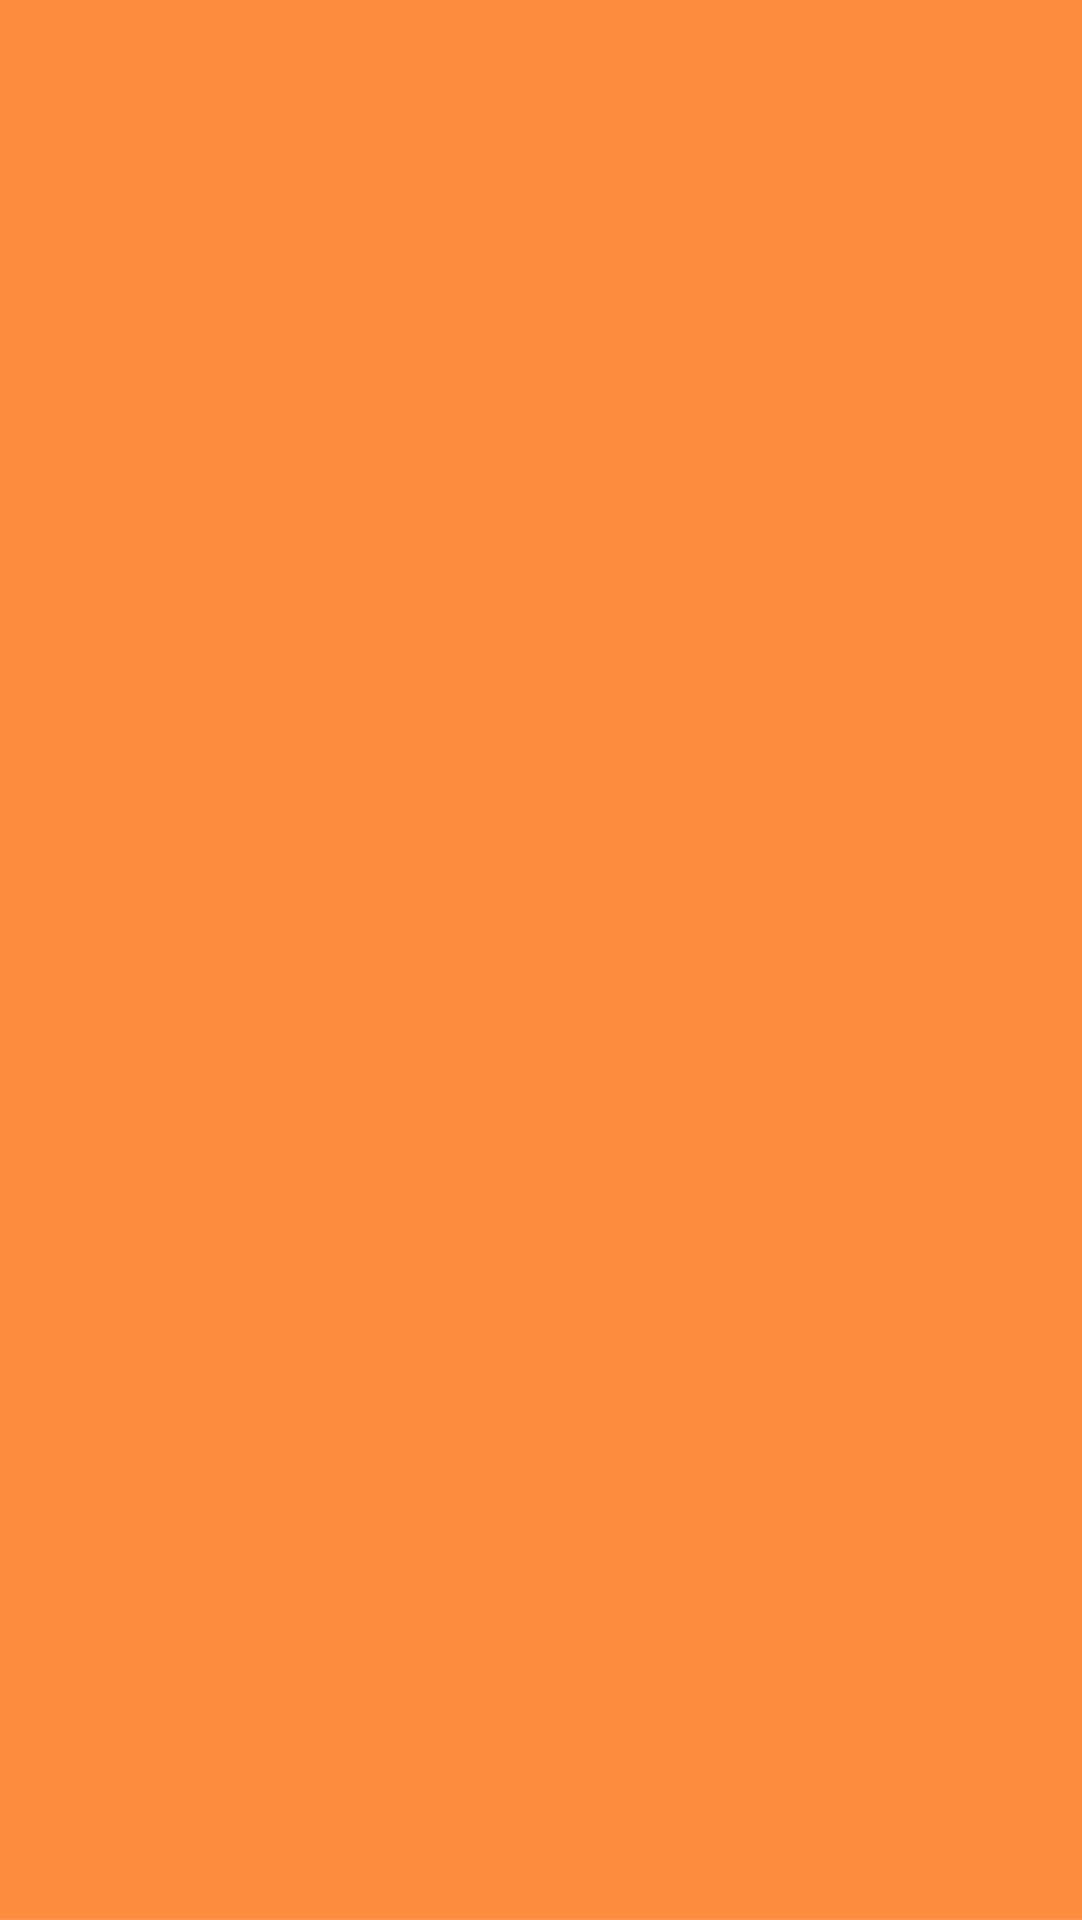 Solid Iphone Orange Wallpaper